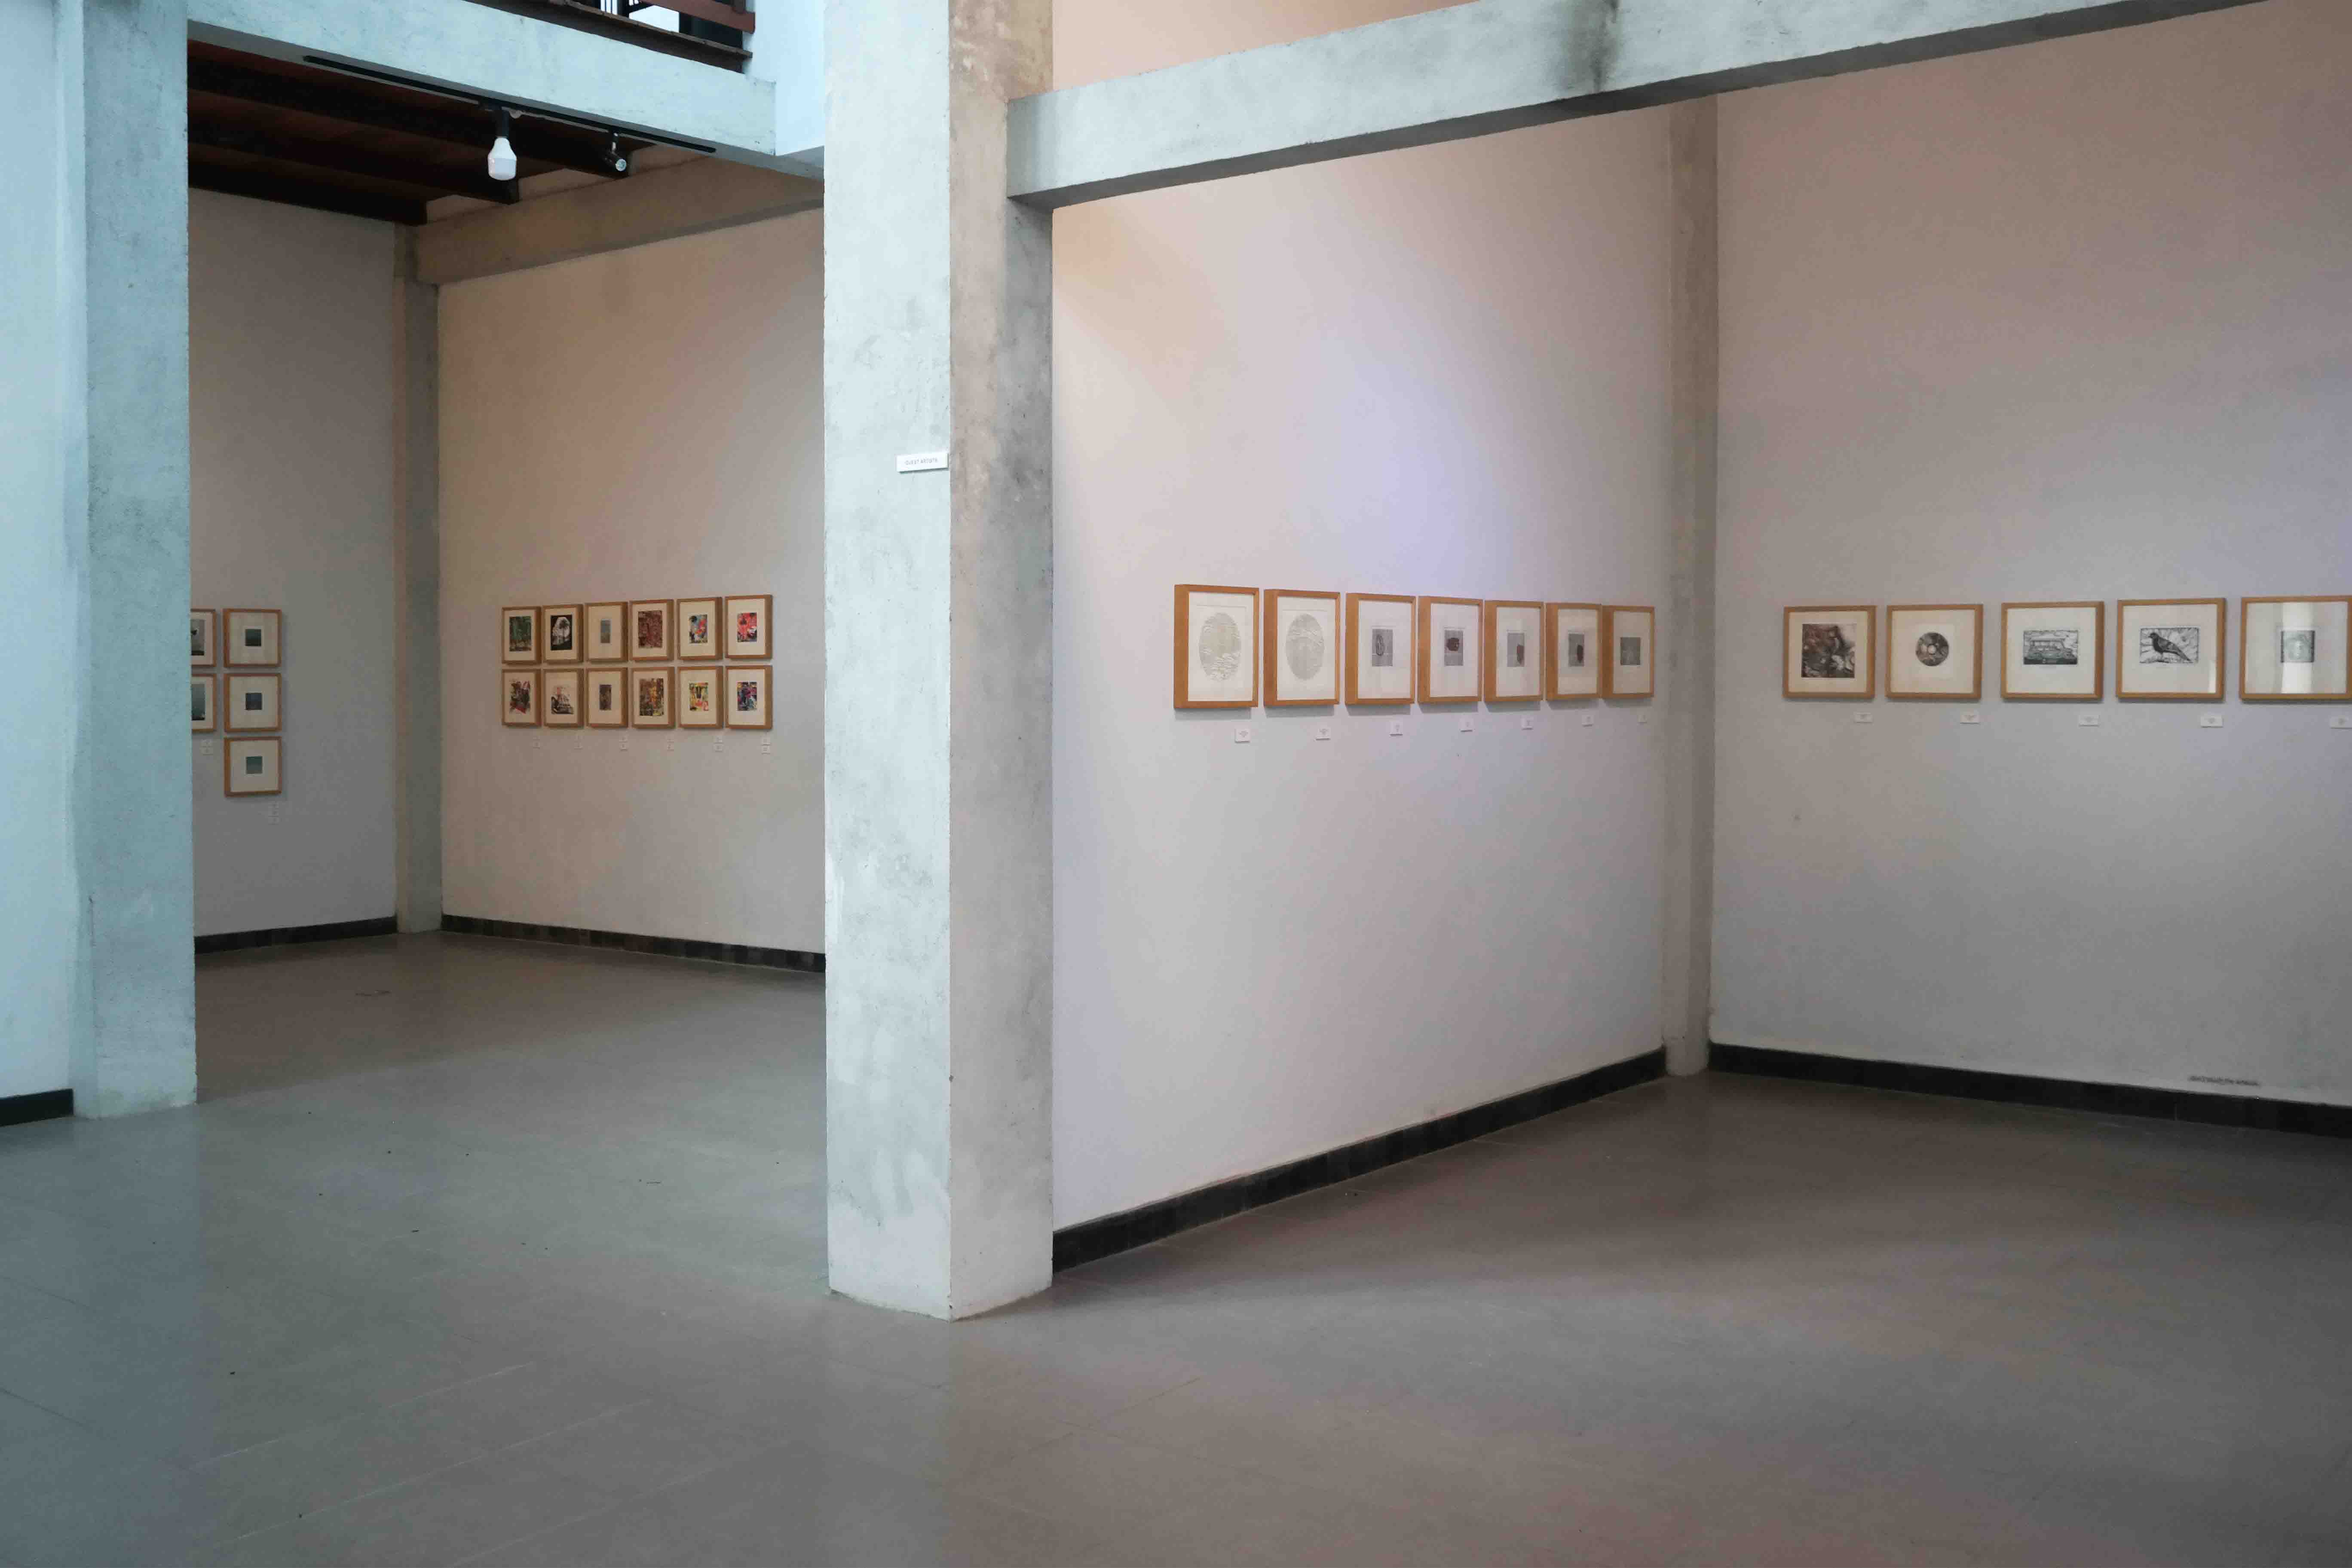 3rd Jogja International Miniprint Biennale 2018 'Message From The Matrix'